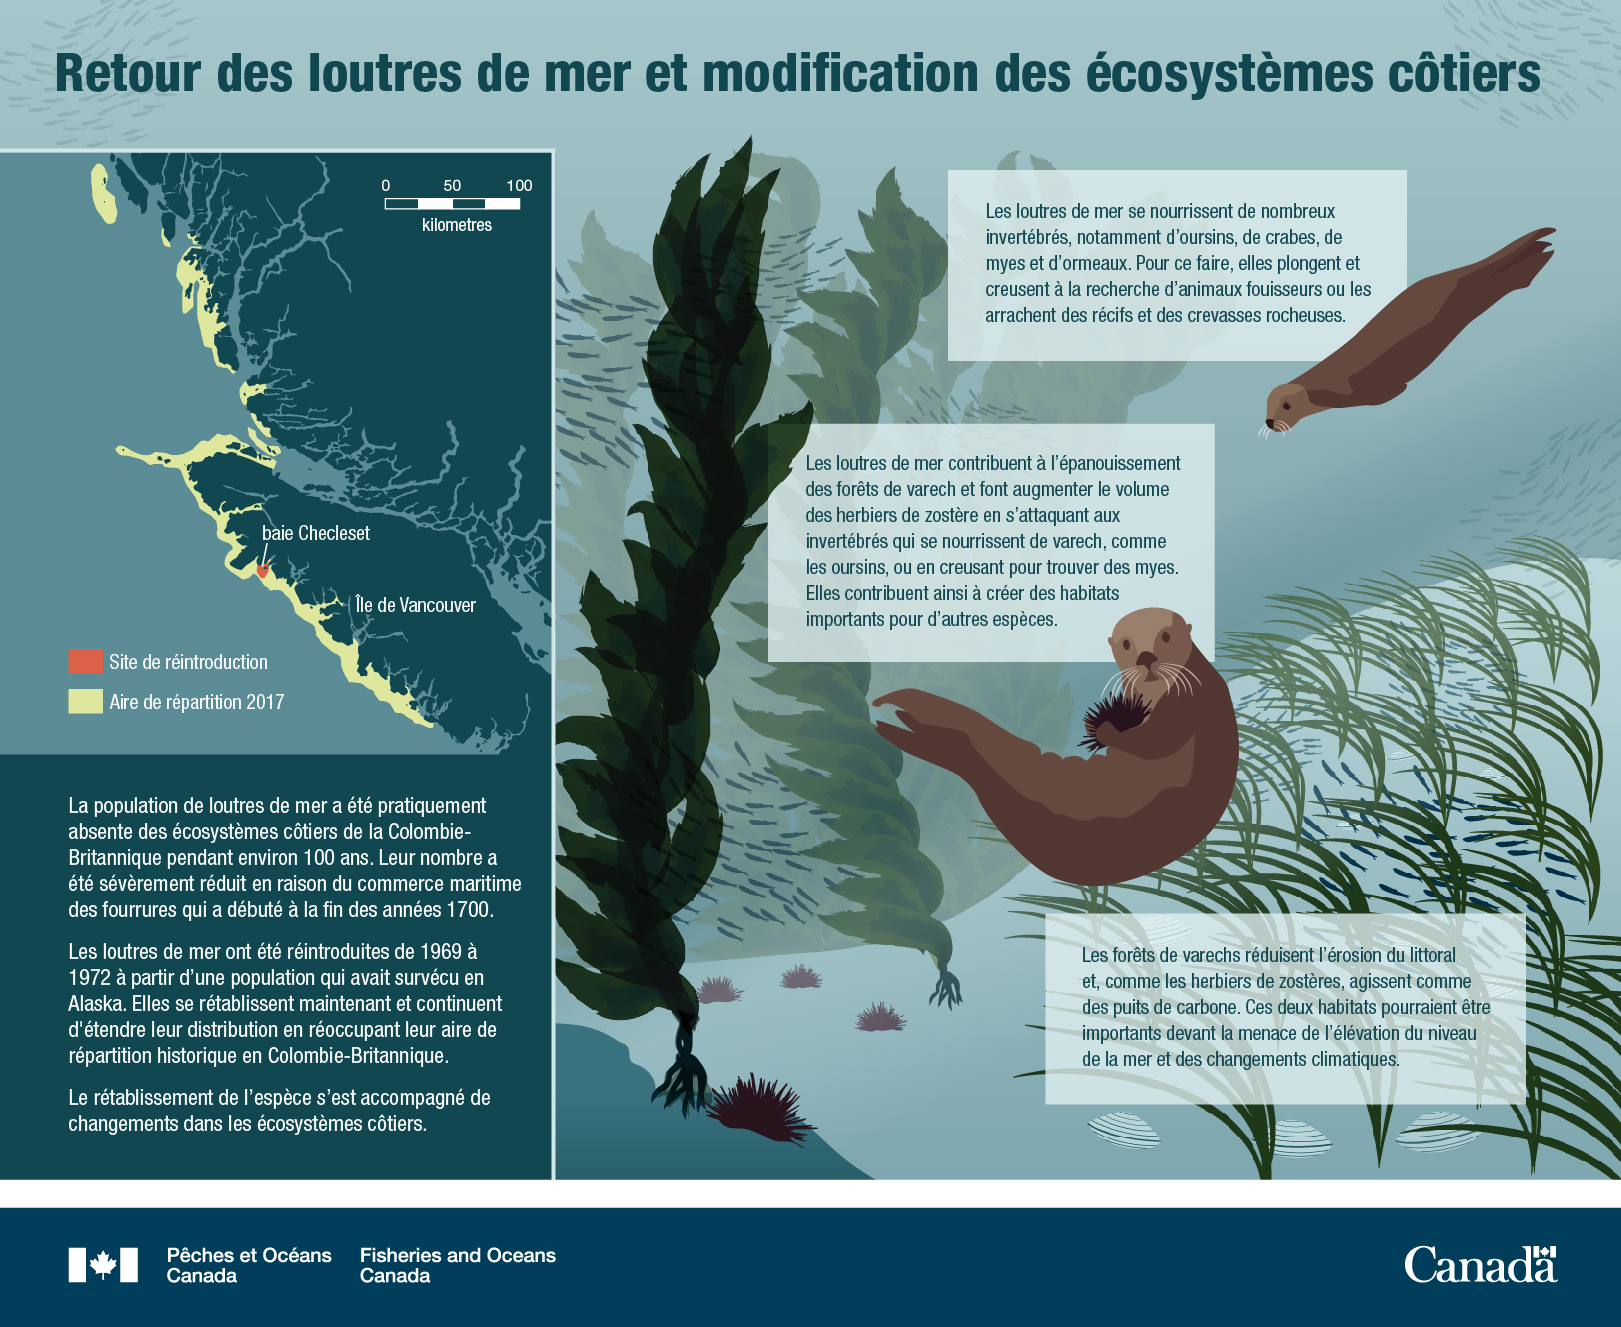 Les loutres de mer reviennent, les écosystèmes côtiers changent